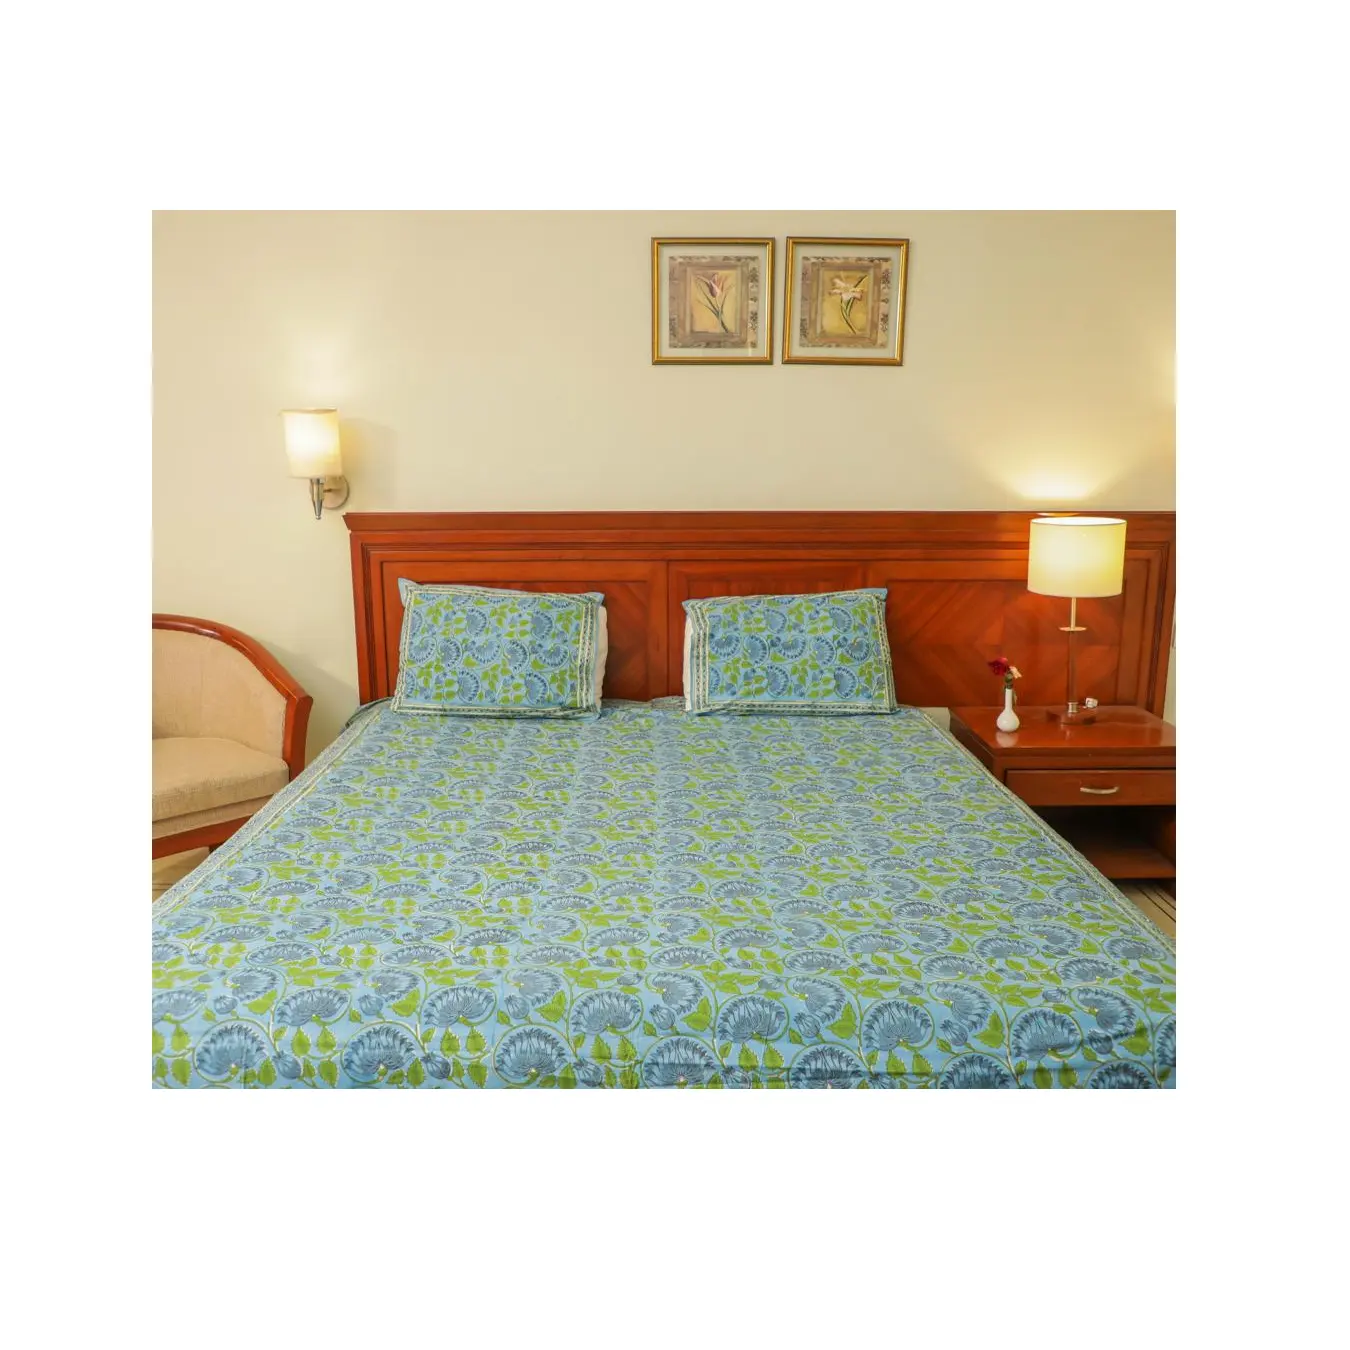 Hot Selling Bettwäsche-Set mit Baumwolle Made & Soft Feel Printed Designed Bettlaken für Schlafzimmer Dekoration verwendet